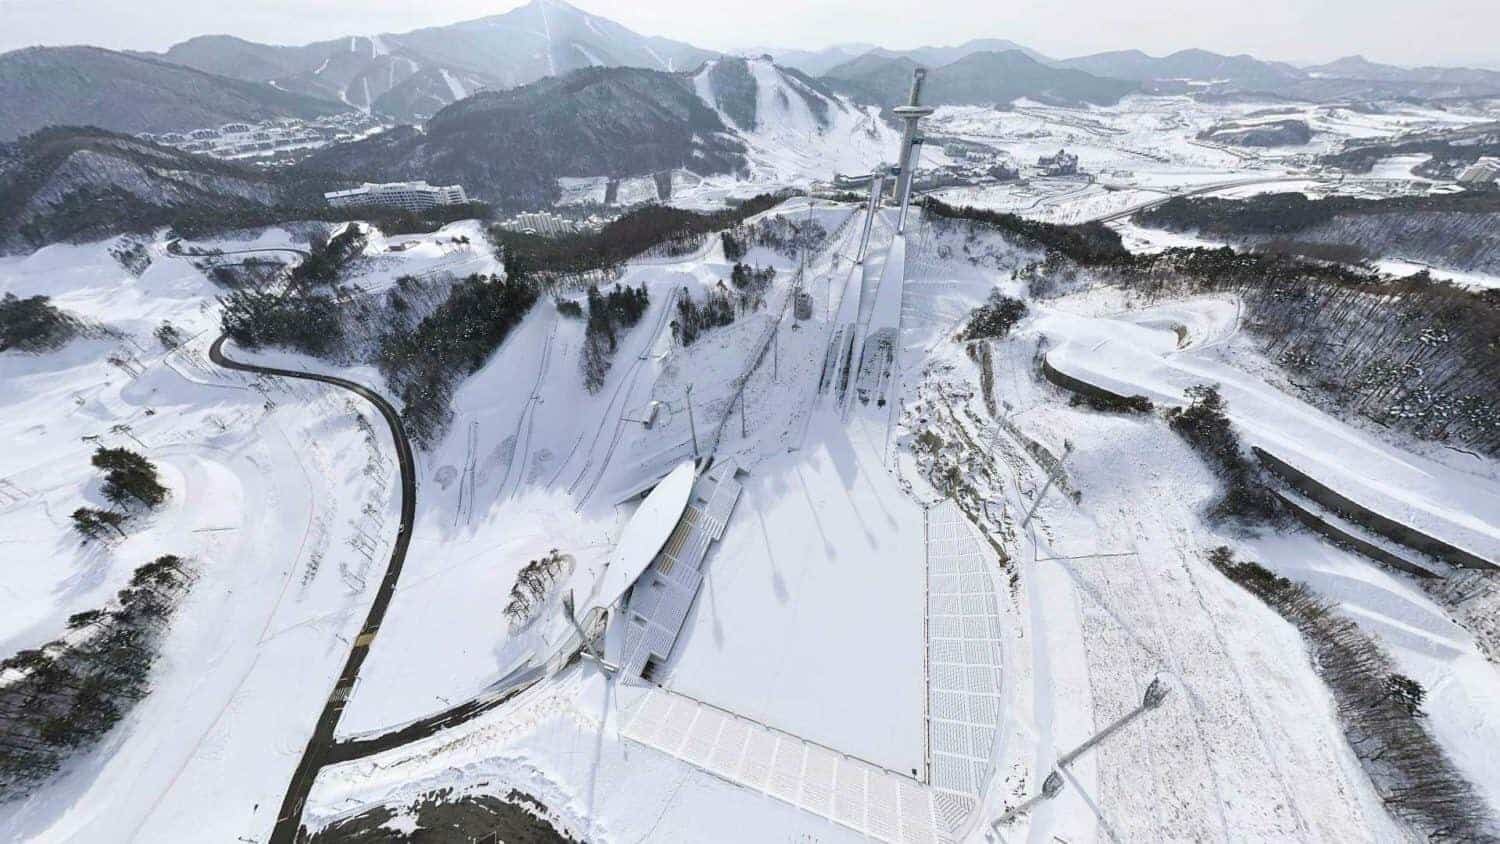 Alpensia de olympiske vinterlege 2018